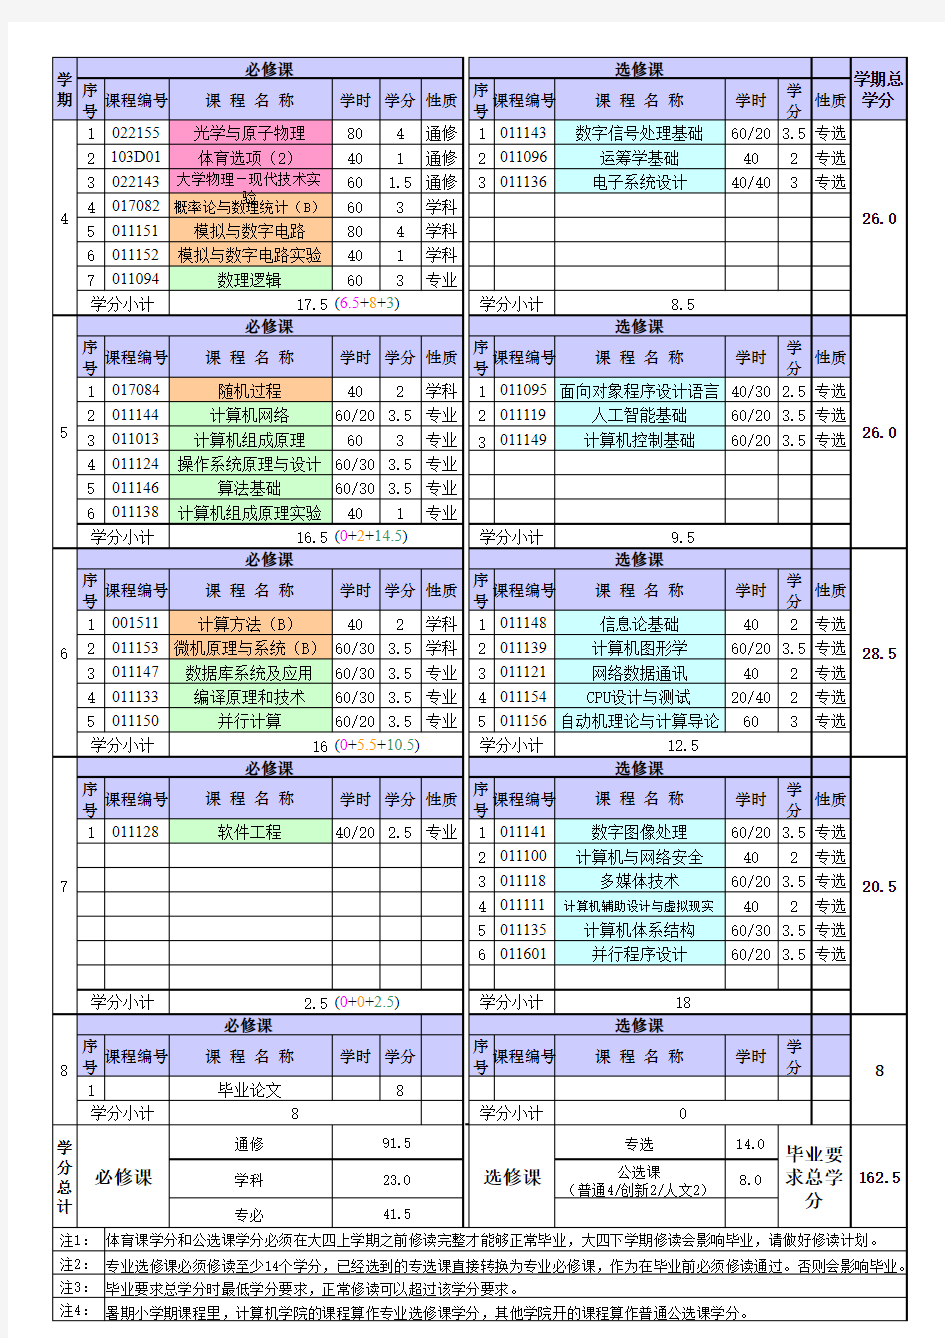 清华大学09级计算机课程表